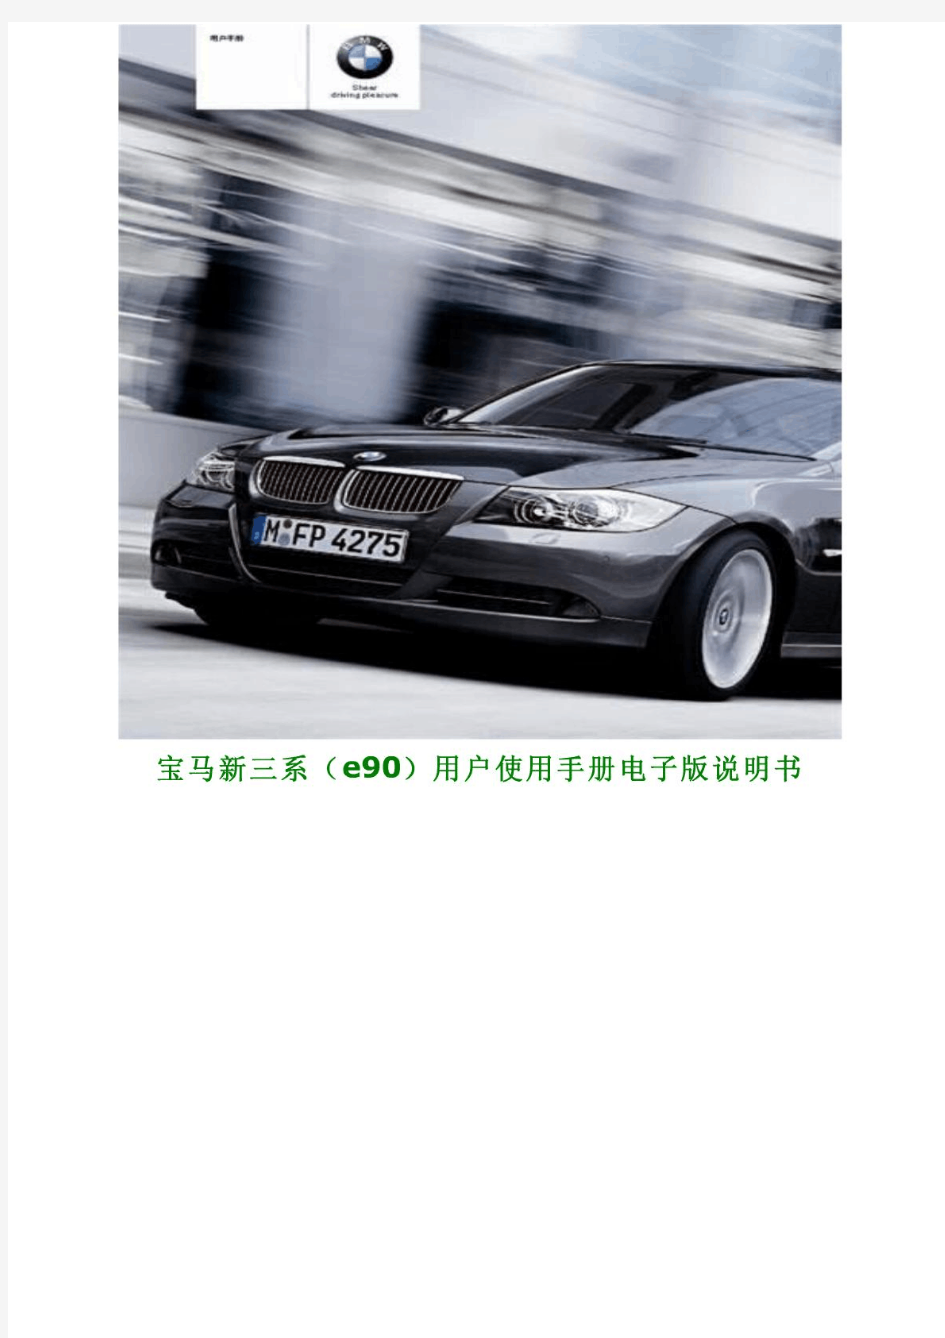 宝马新三系(e90)用户使用手册电子版说明书